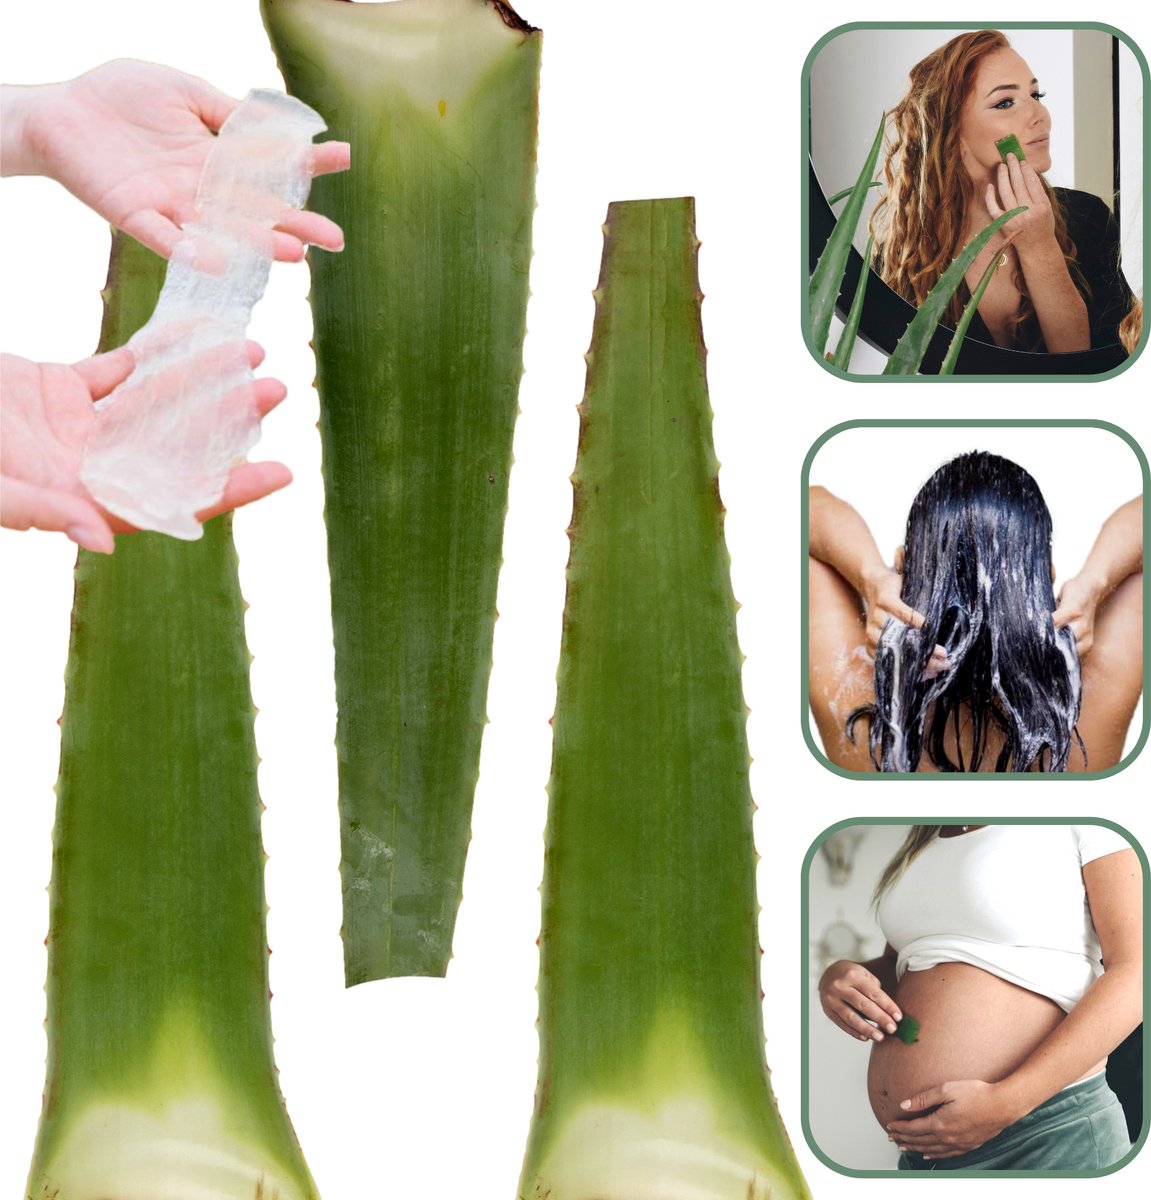 Dr. Green® 3x Aloë vera Blad met Handleiding - Voor Huid, Haar, Acne & Meer - Gezicht Masker Maken - Puur Gel en 100% Biologisch